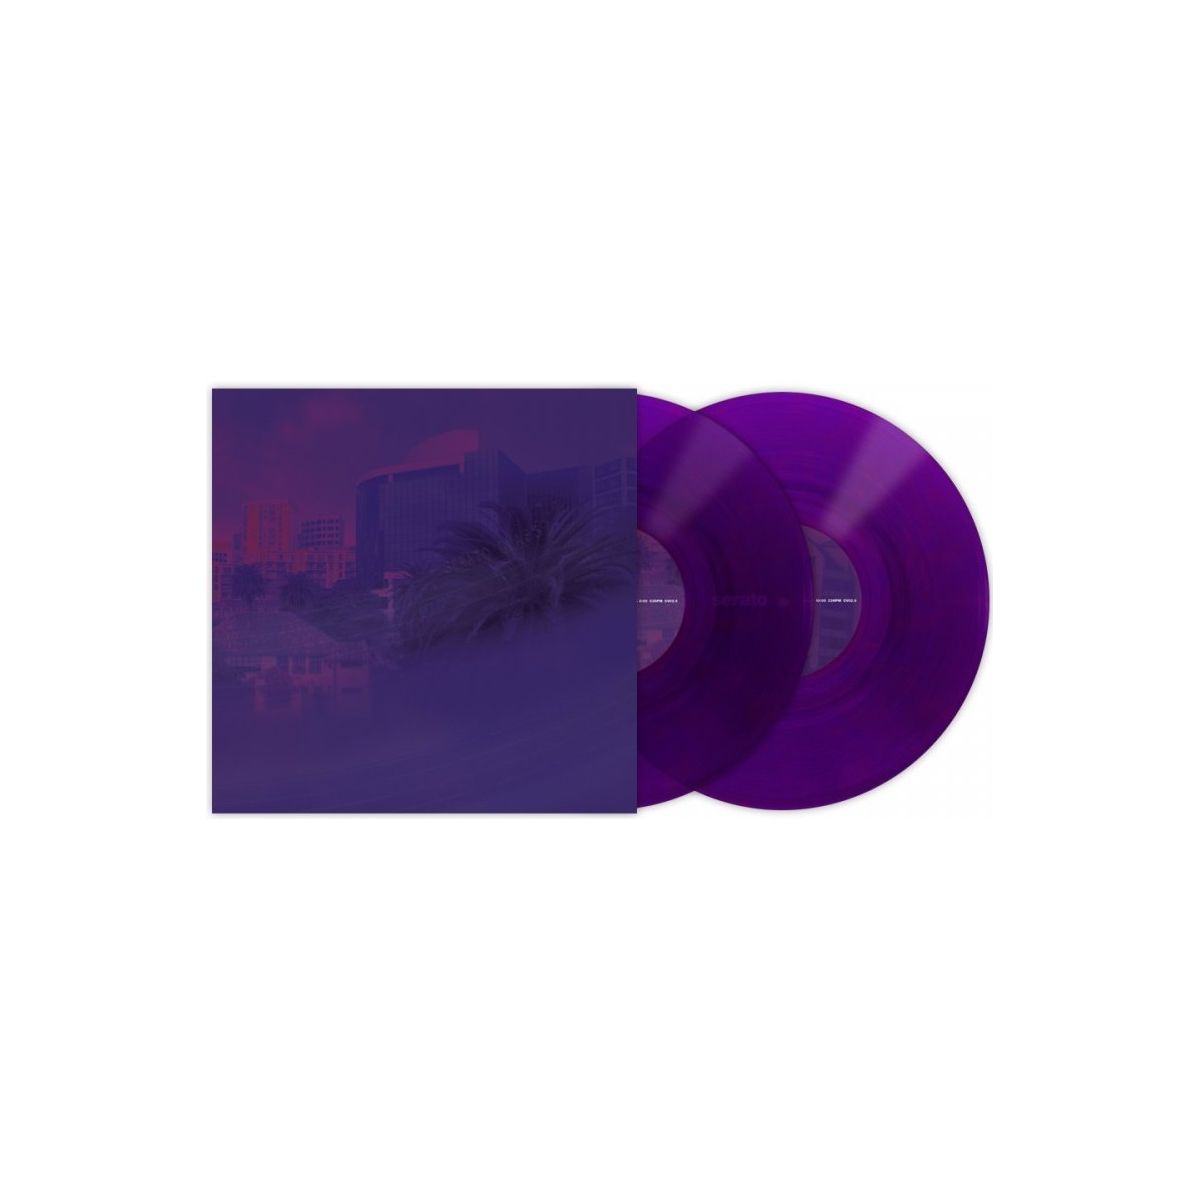 Vinyles time codés - Serato - Paire Vinyl Purple 10